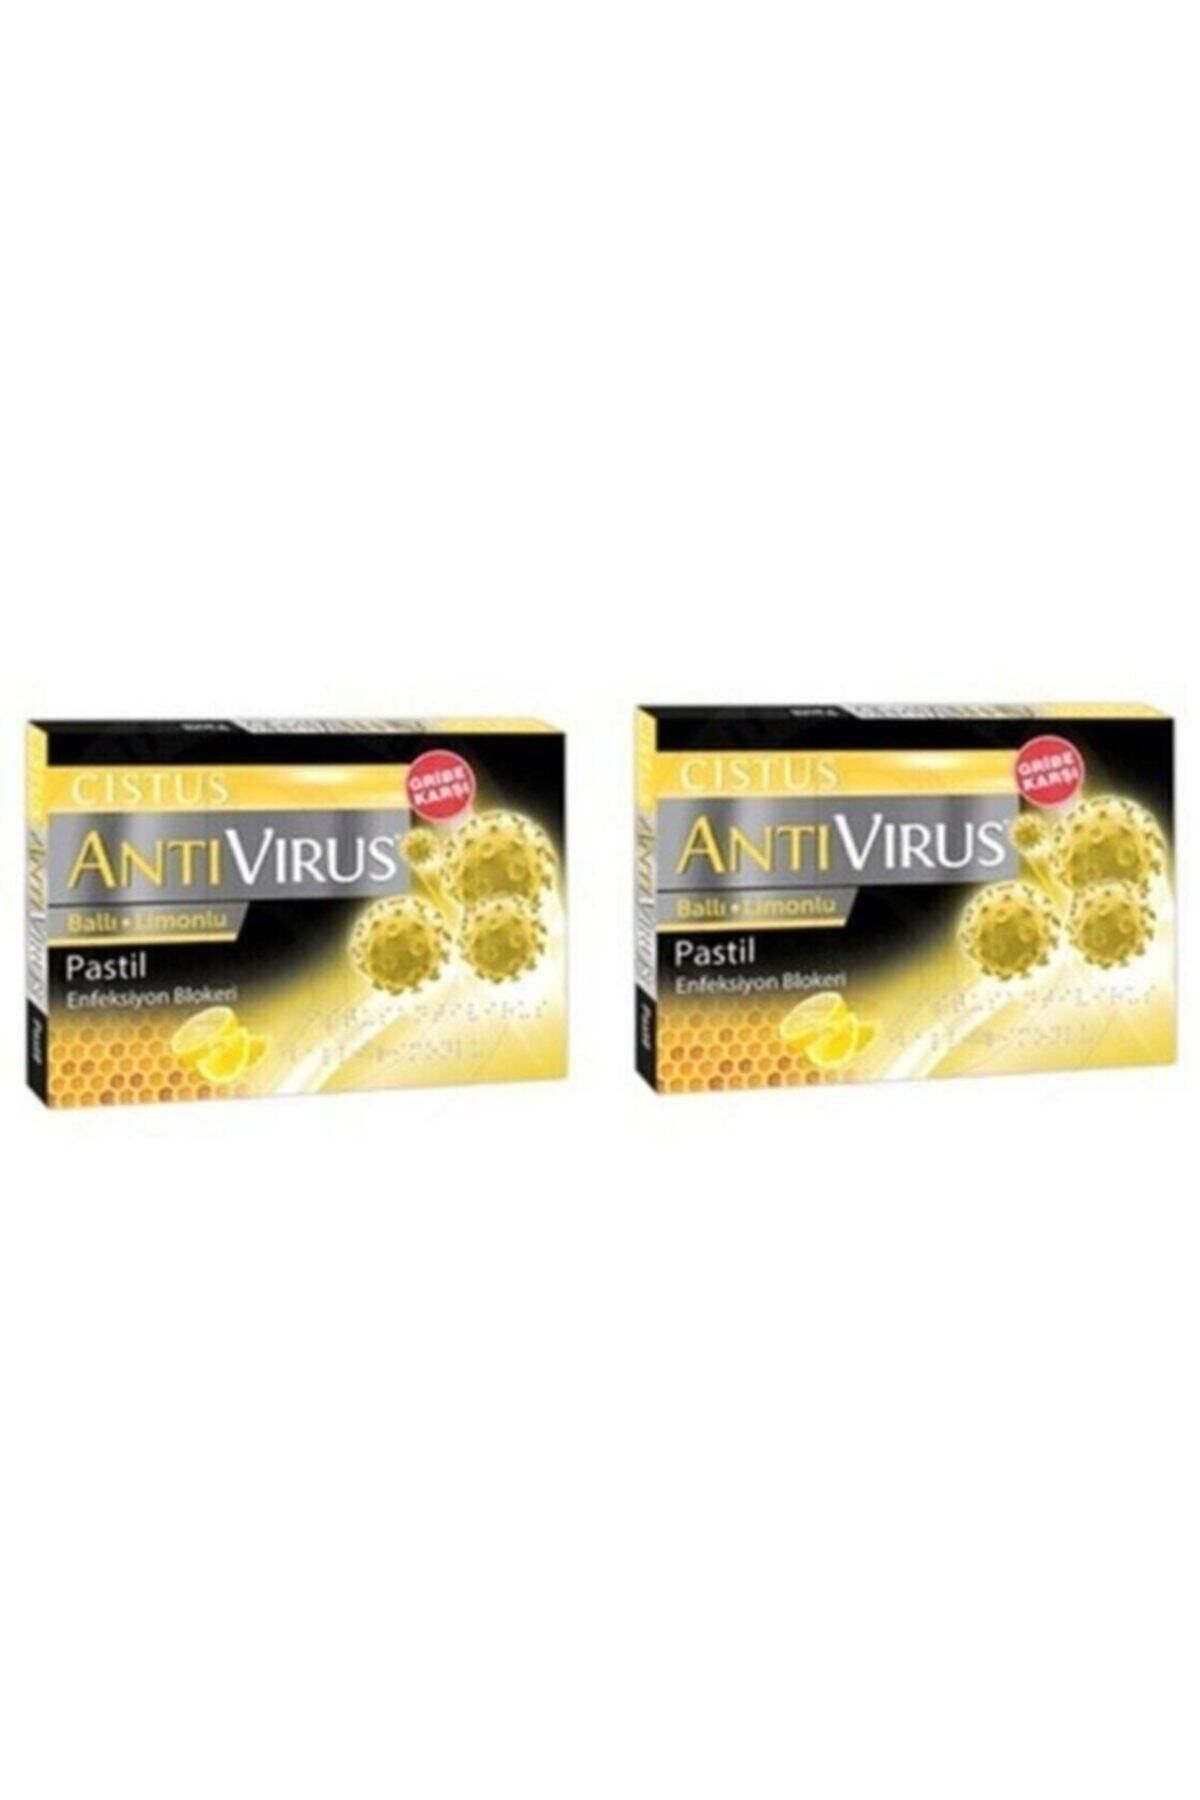 CISTUS Antivirus Pastil Ballı Limonlu 2'li Paket BSL00392